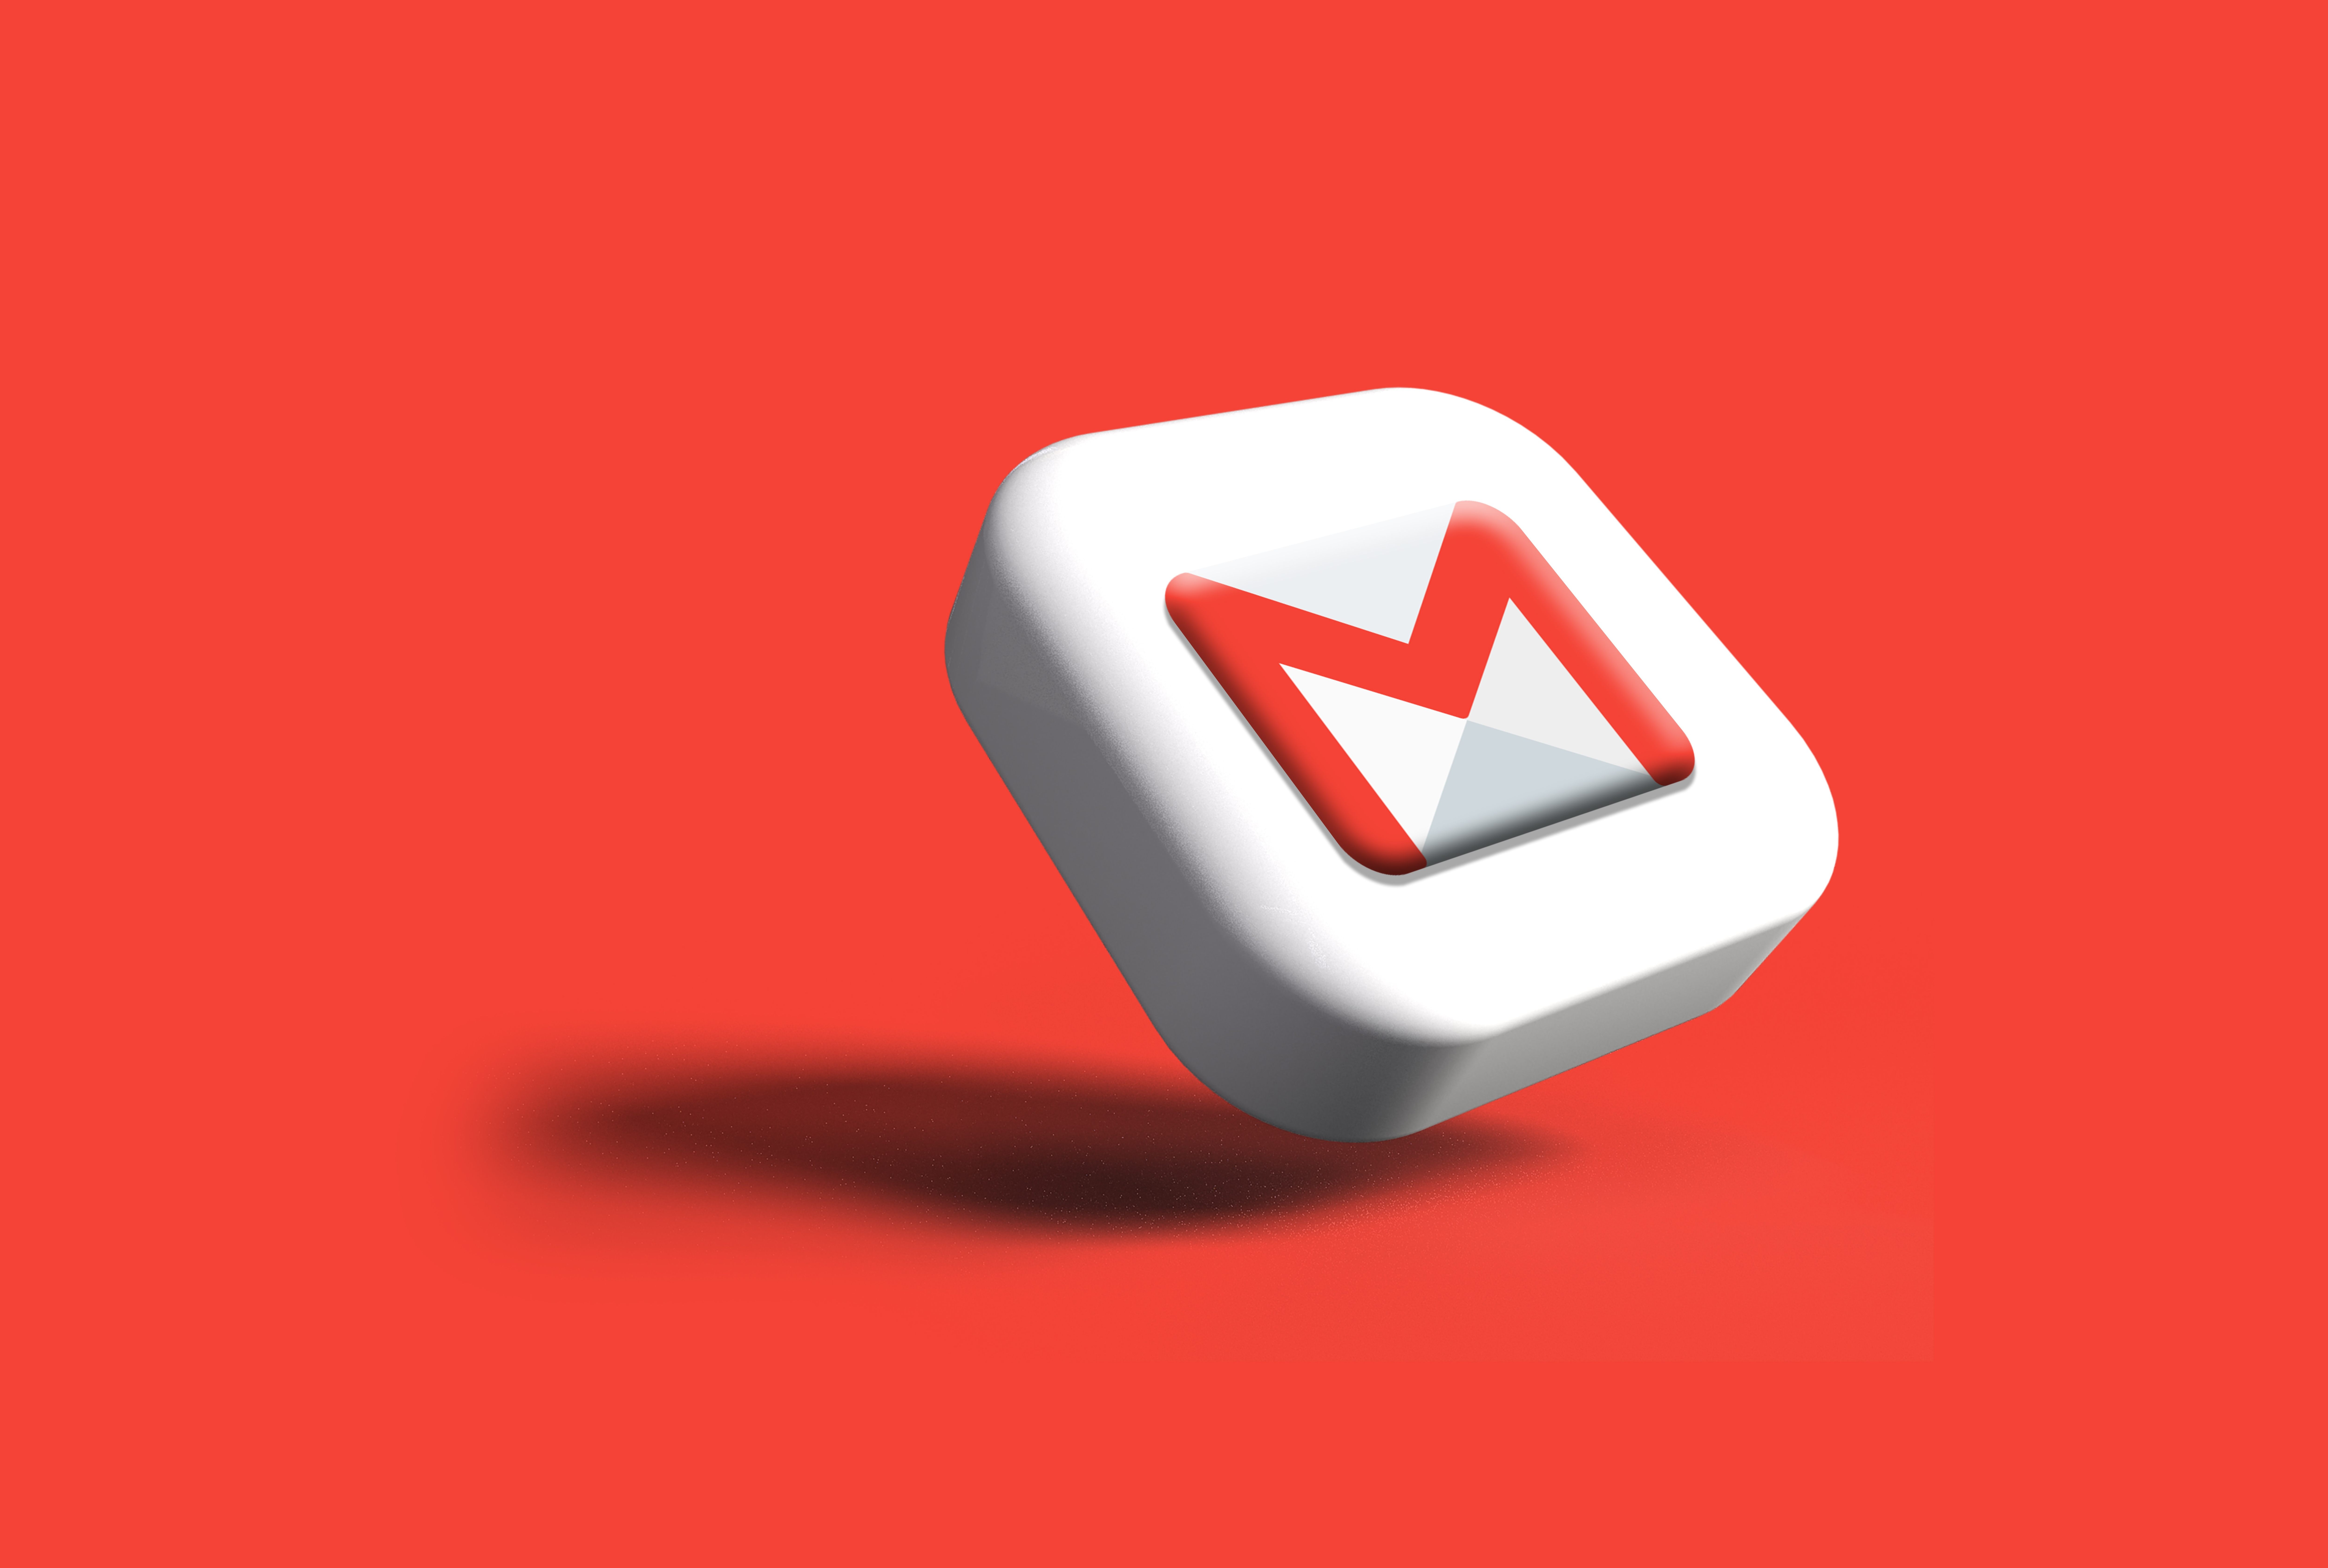 använda gmail för att skicka stora filer via e-post